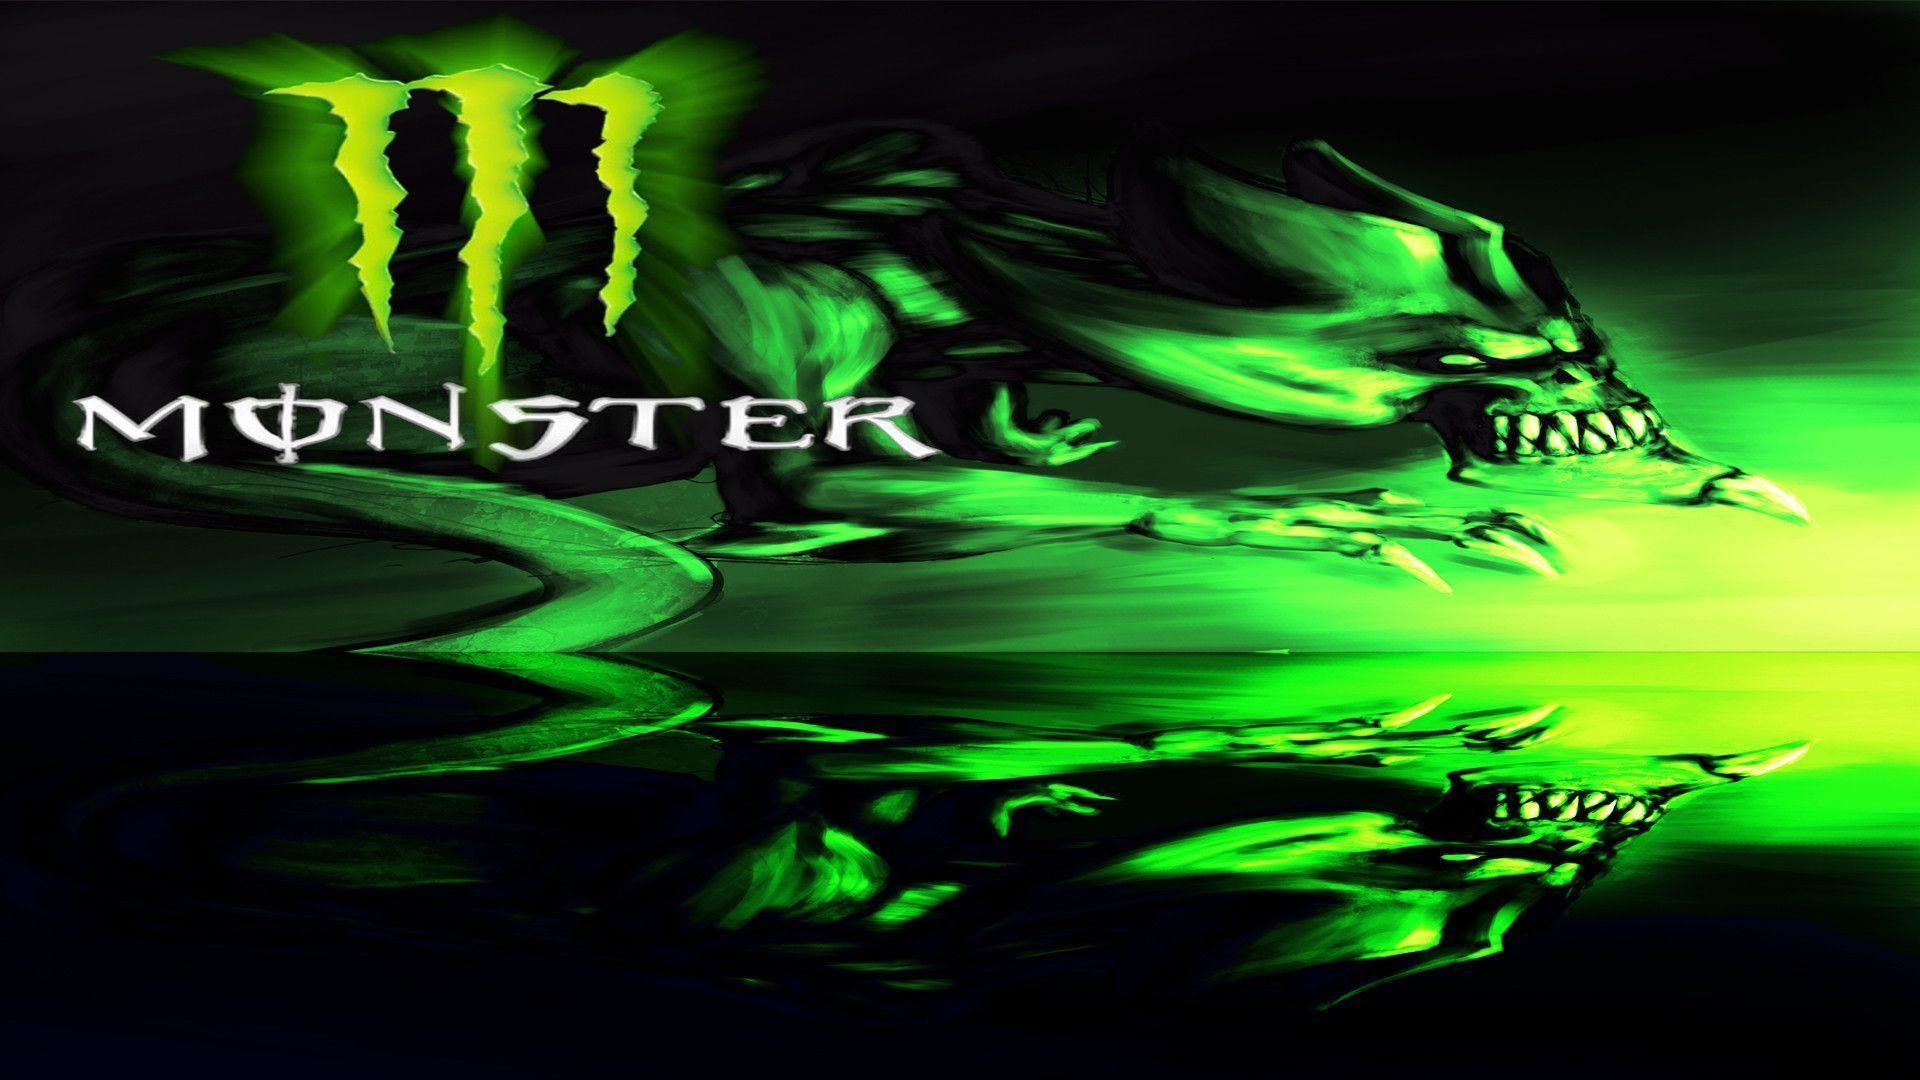 1920x1080 Monster Energy wallpaper - 986965